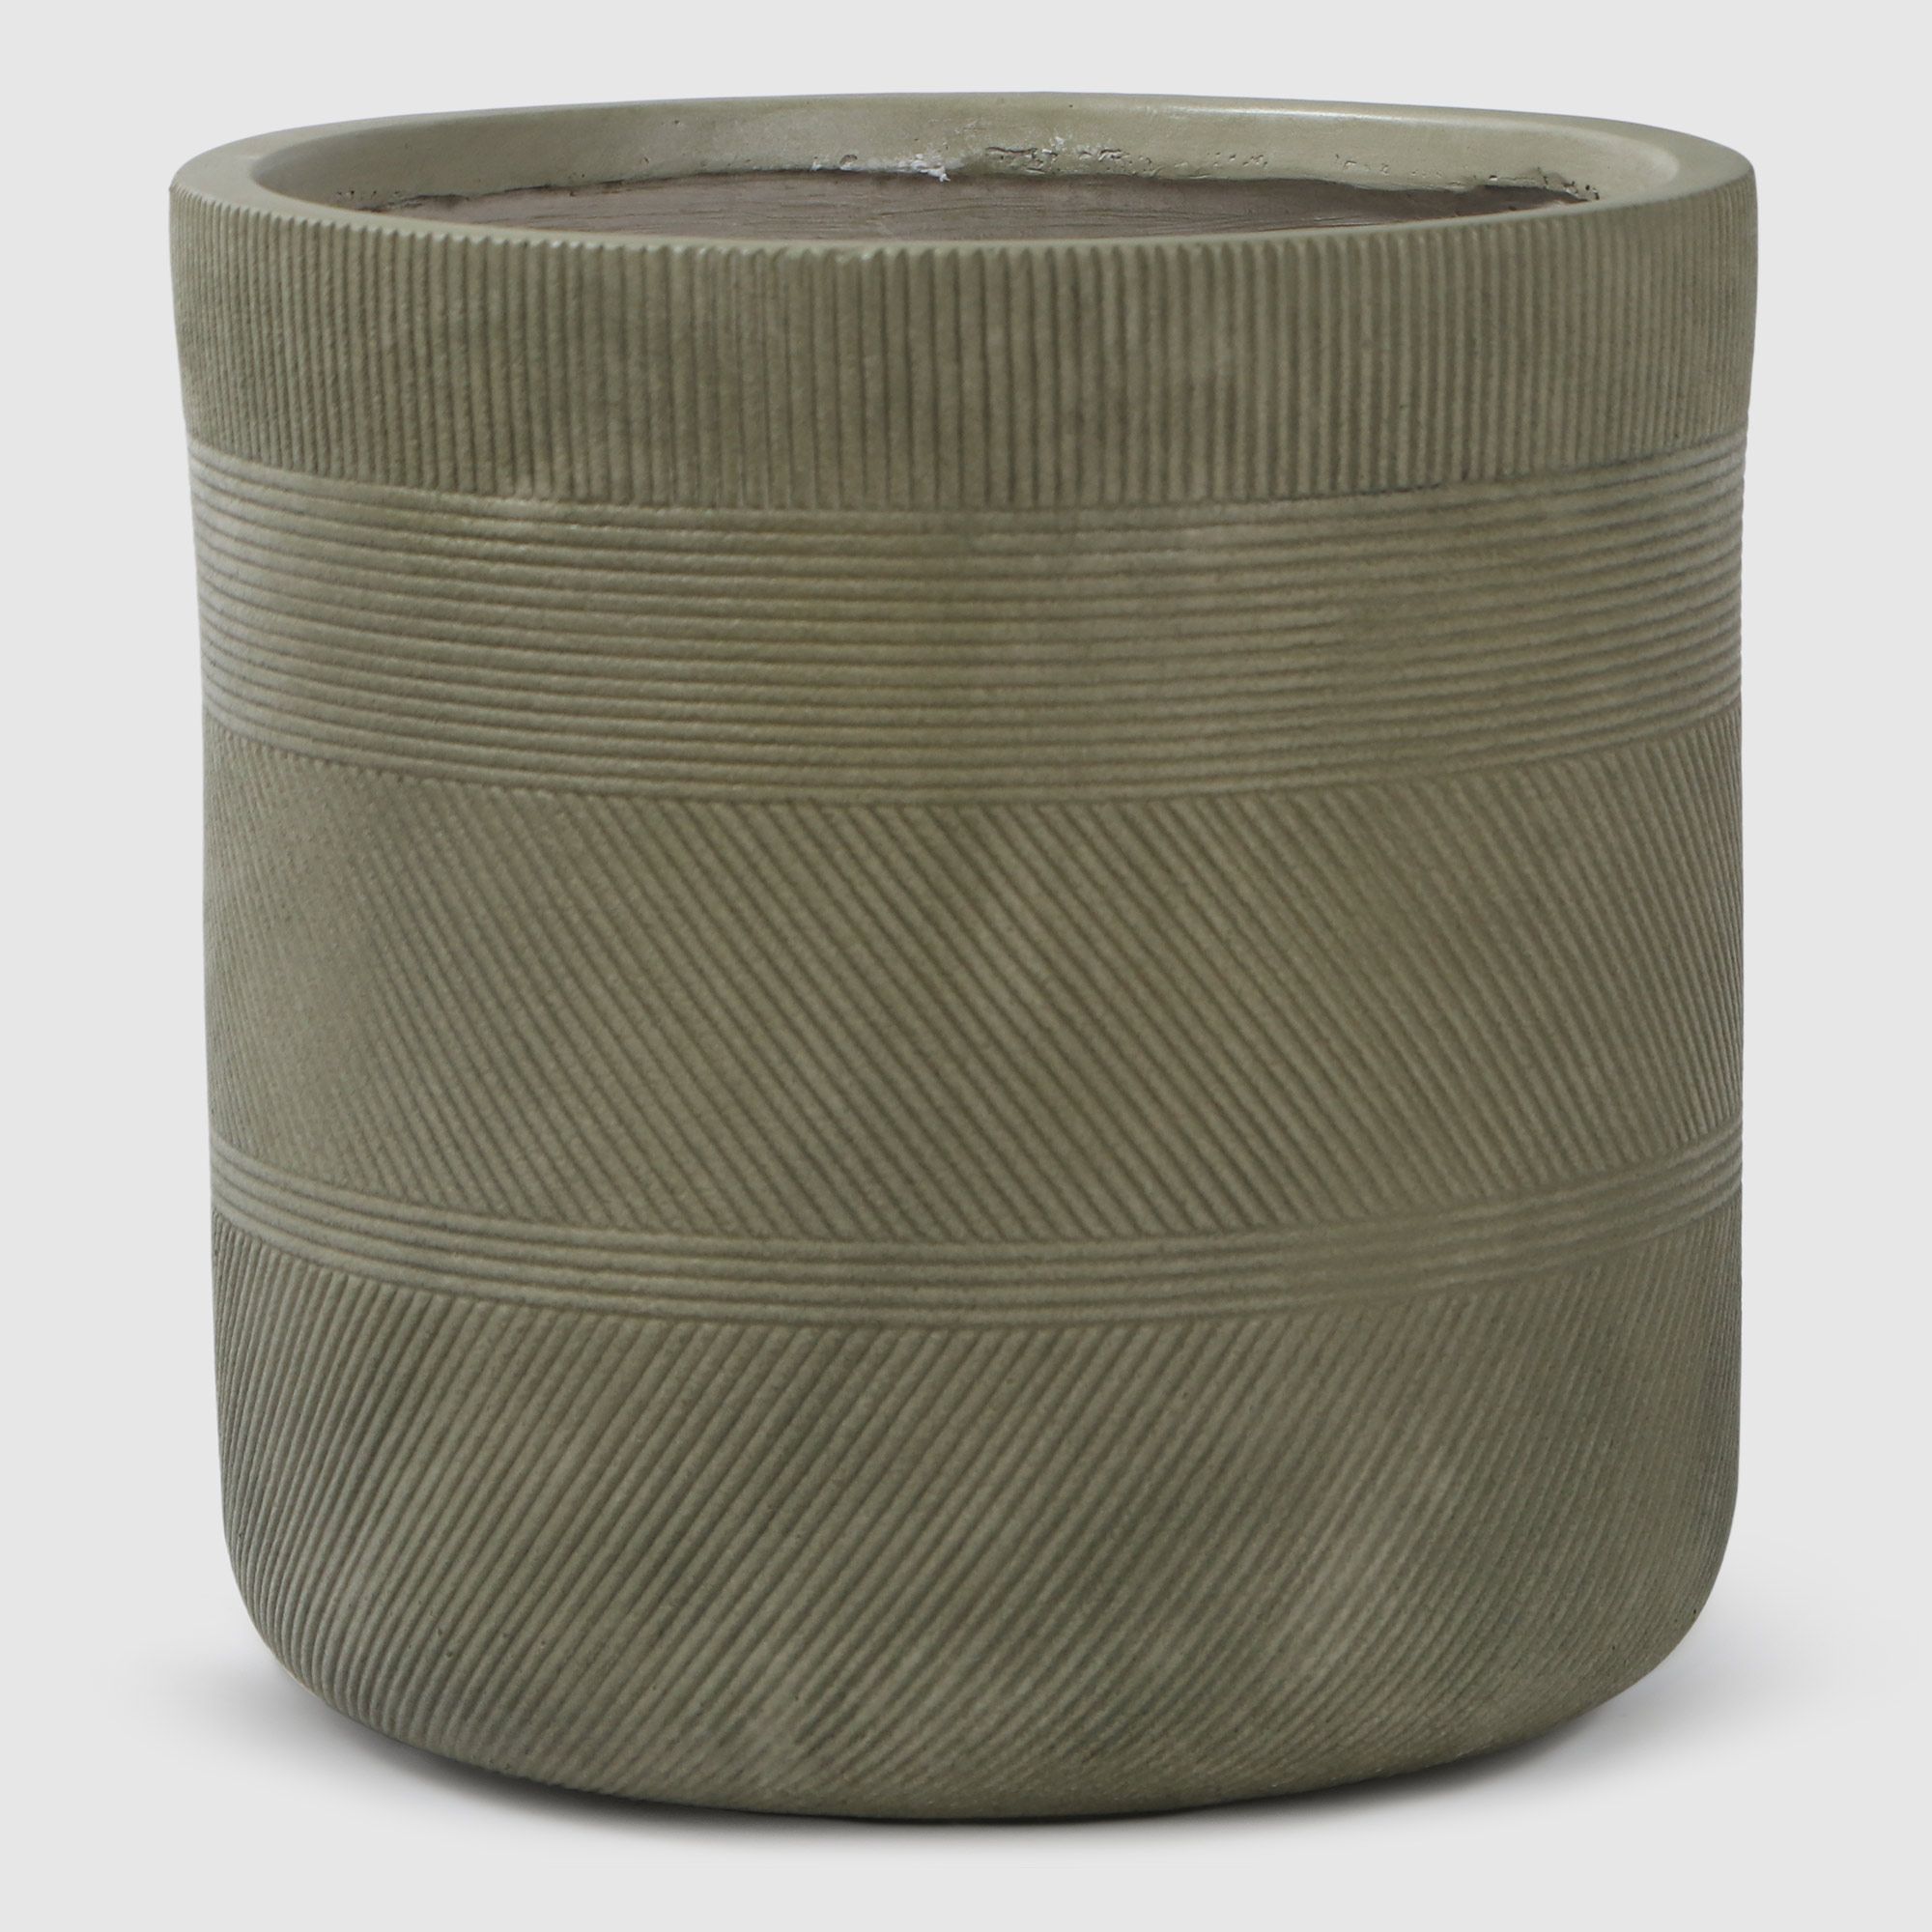 Горшок для цветов L&T Pottery цилиндр антик светло-зеленый D24 флисовый плед hyseas 200х220 см светло зеленый